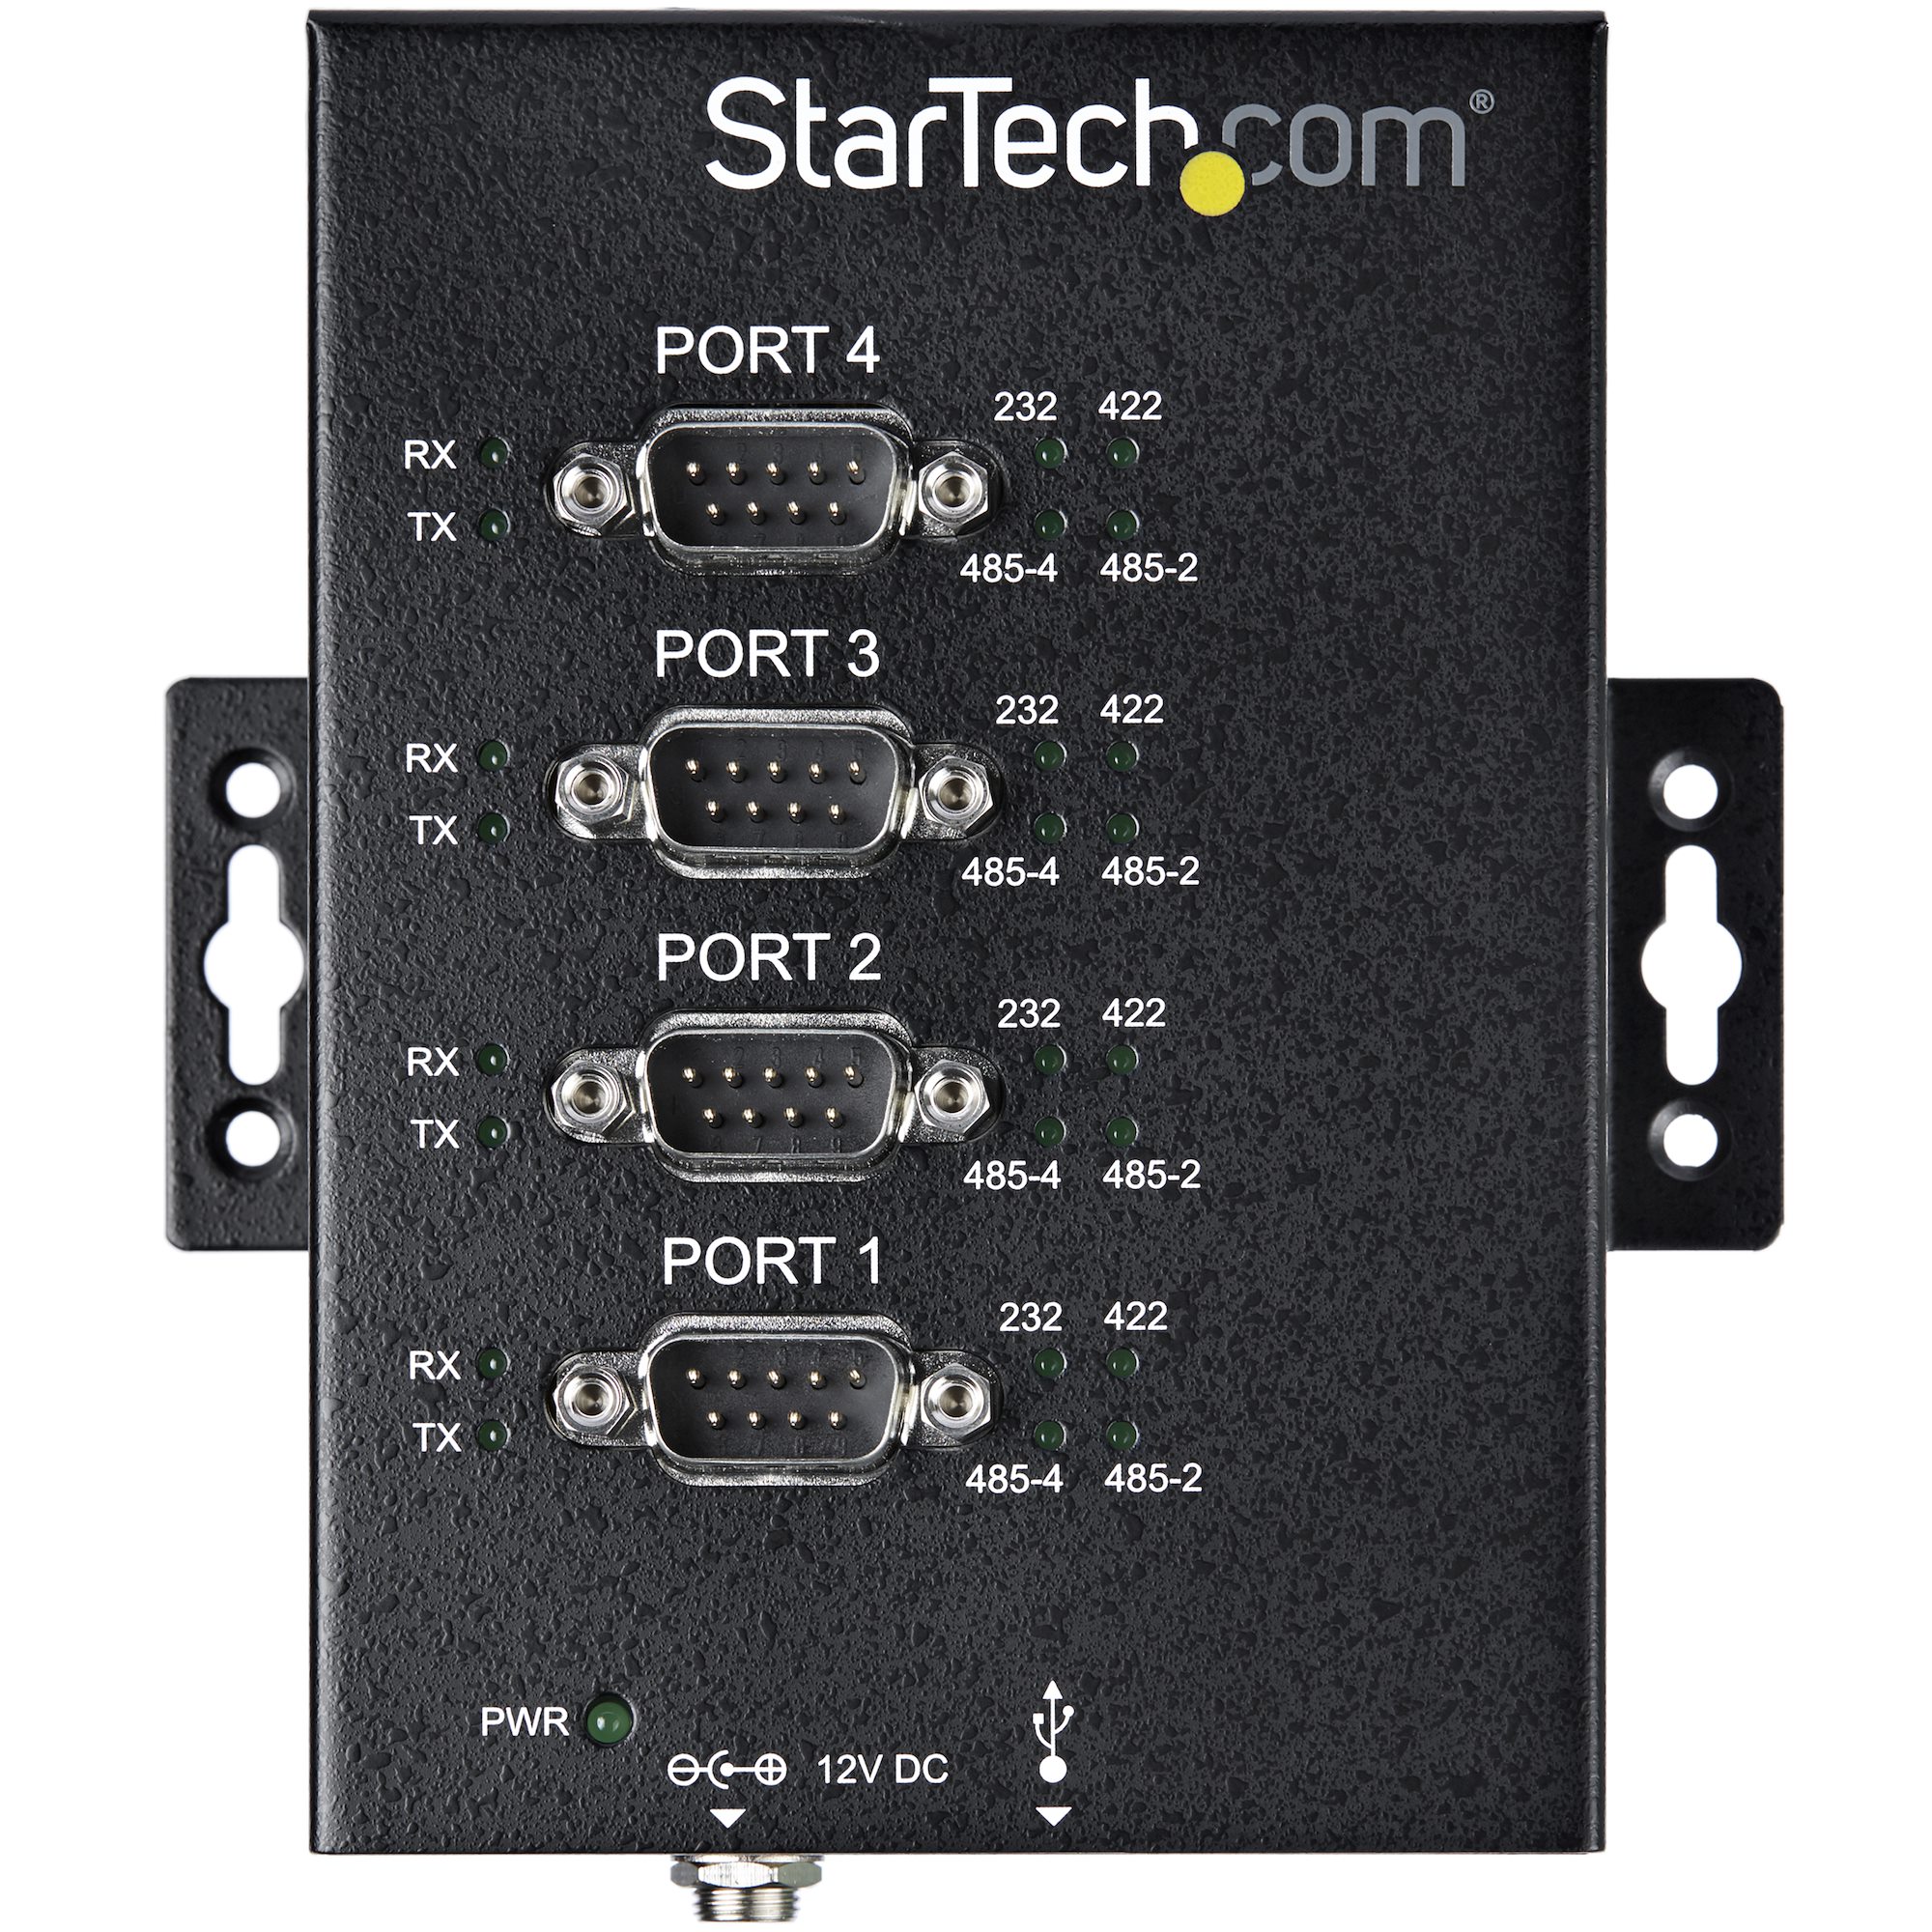 StarTech.com Hub adaptateur industriel USB vers série 2 ports à fix